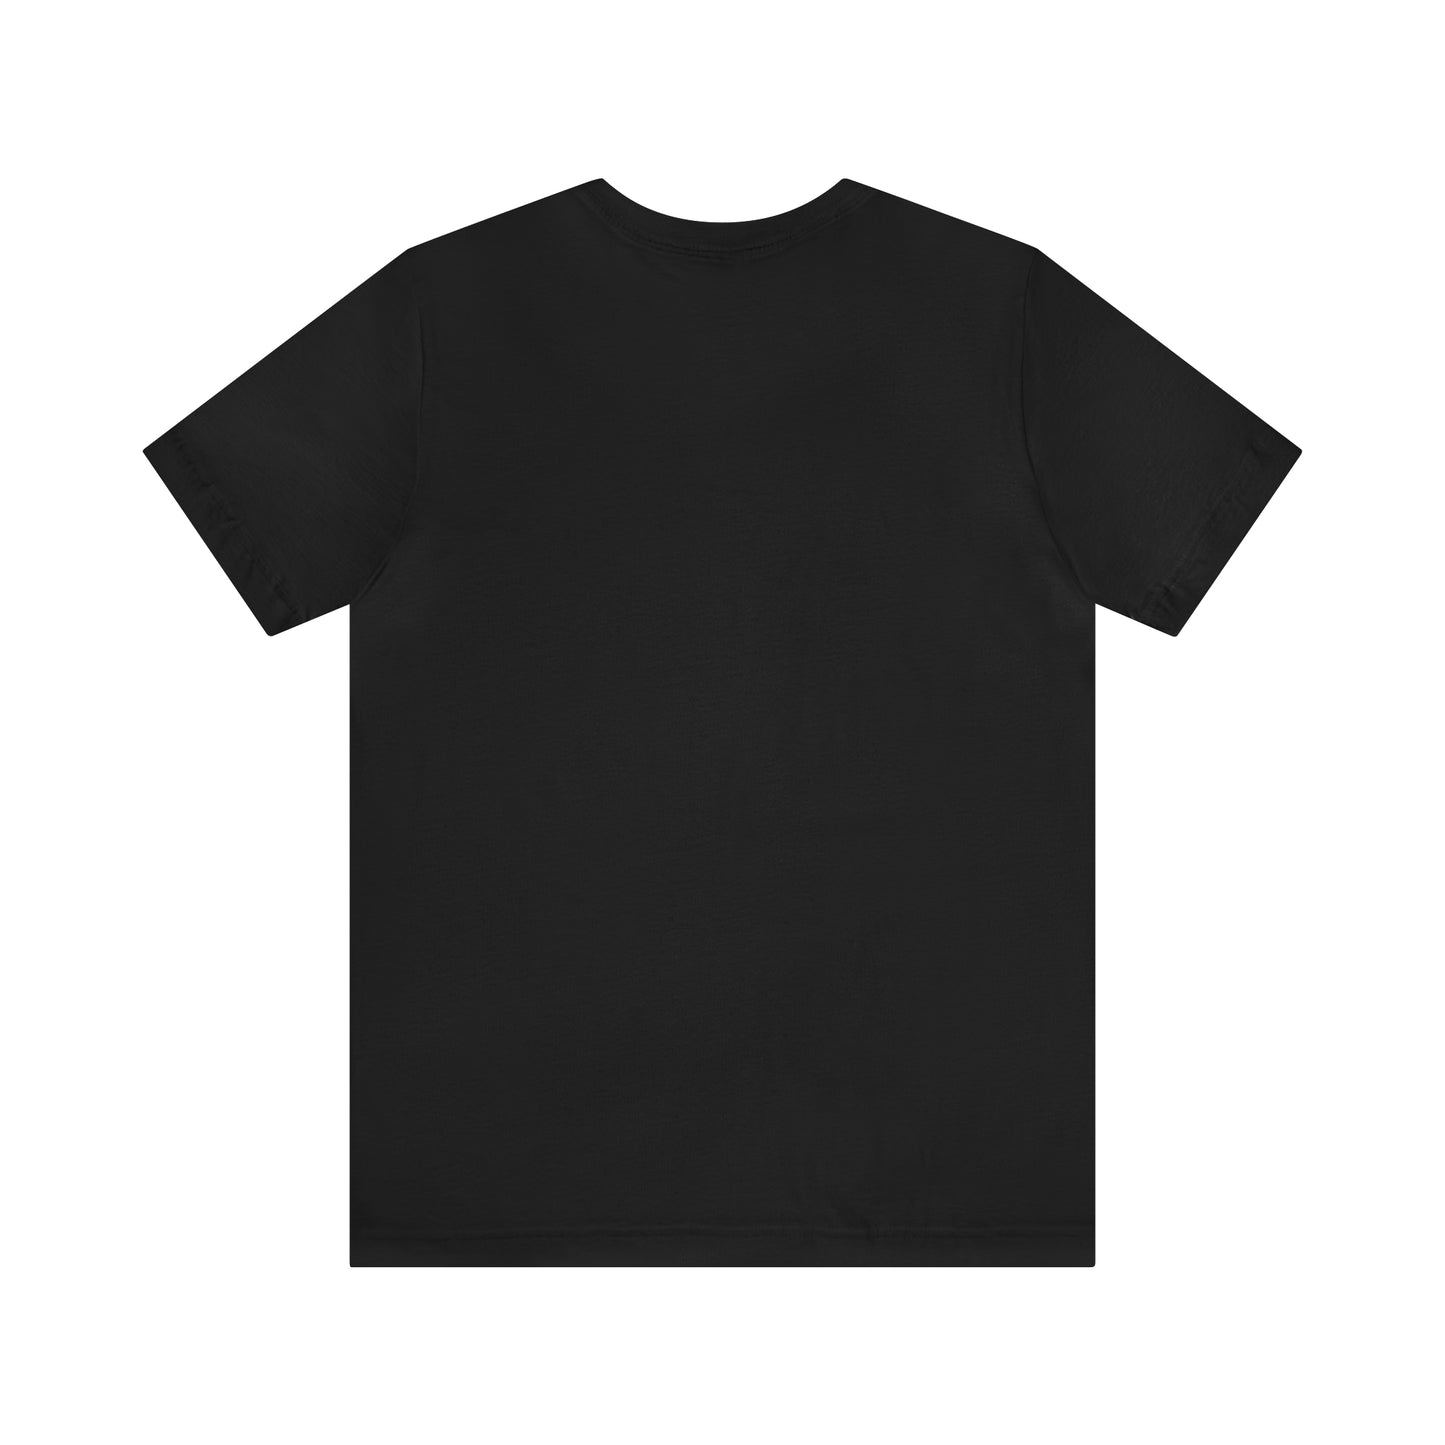 Beverly, Mass Pickleball Short Sleeve T-Shirt